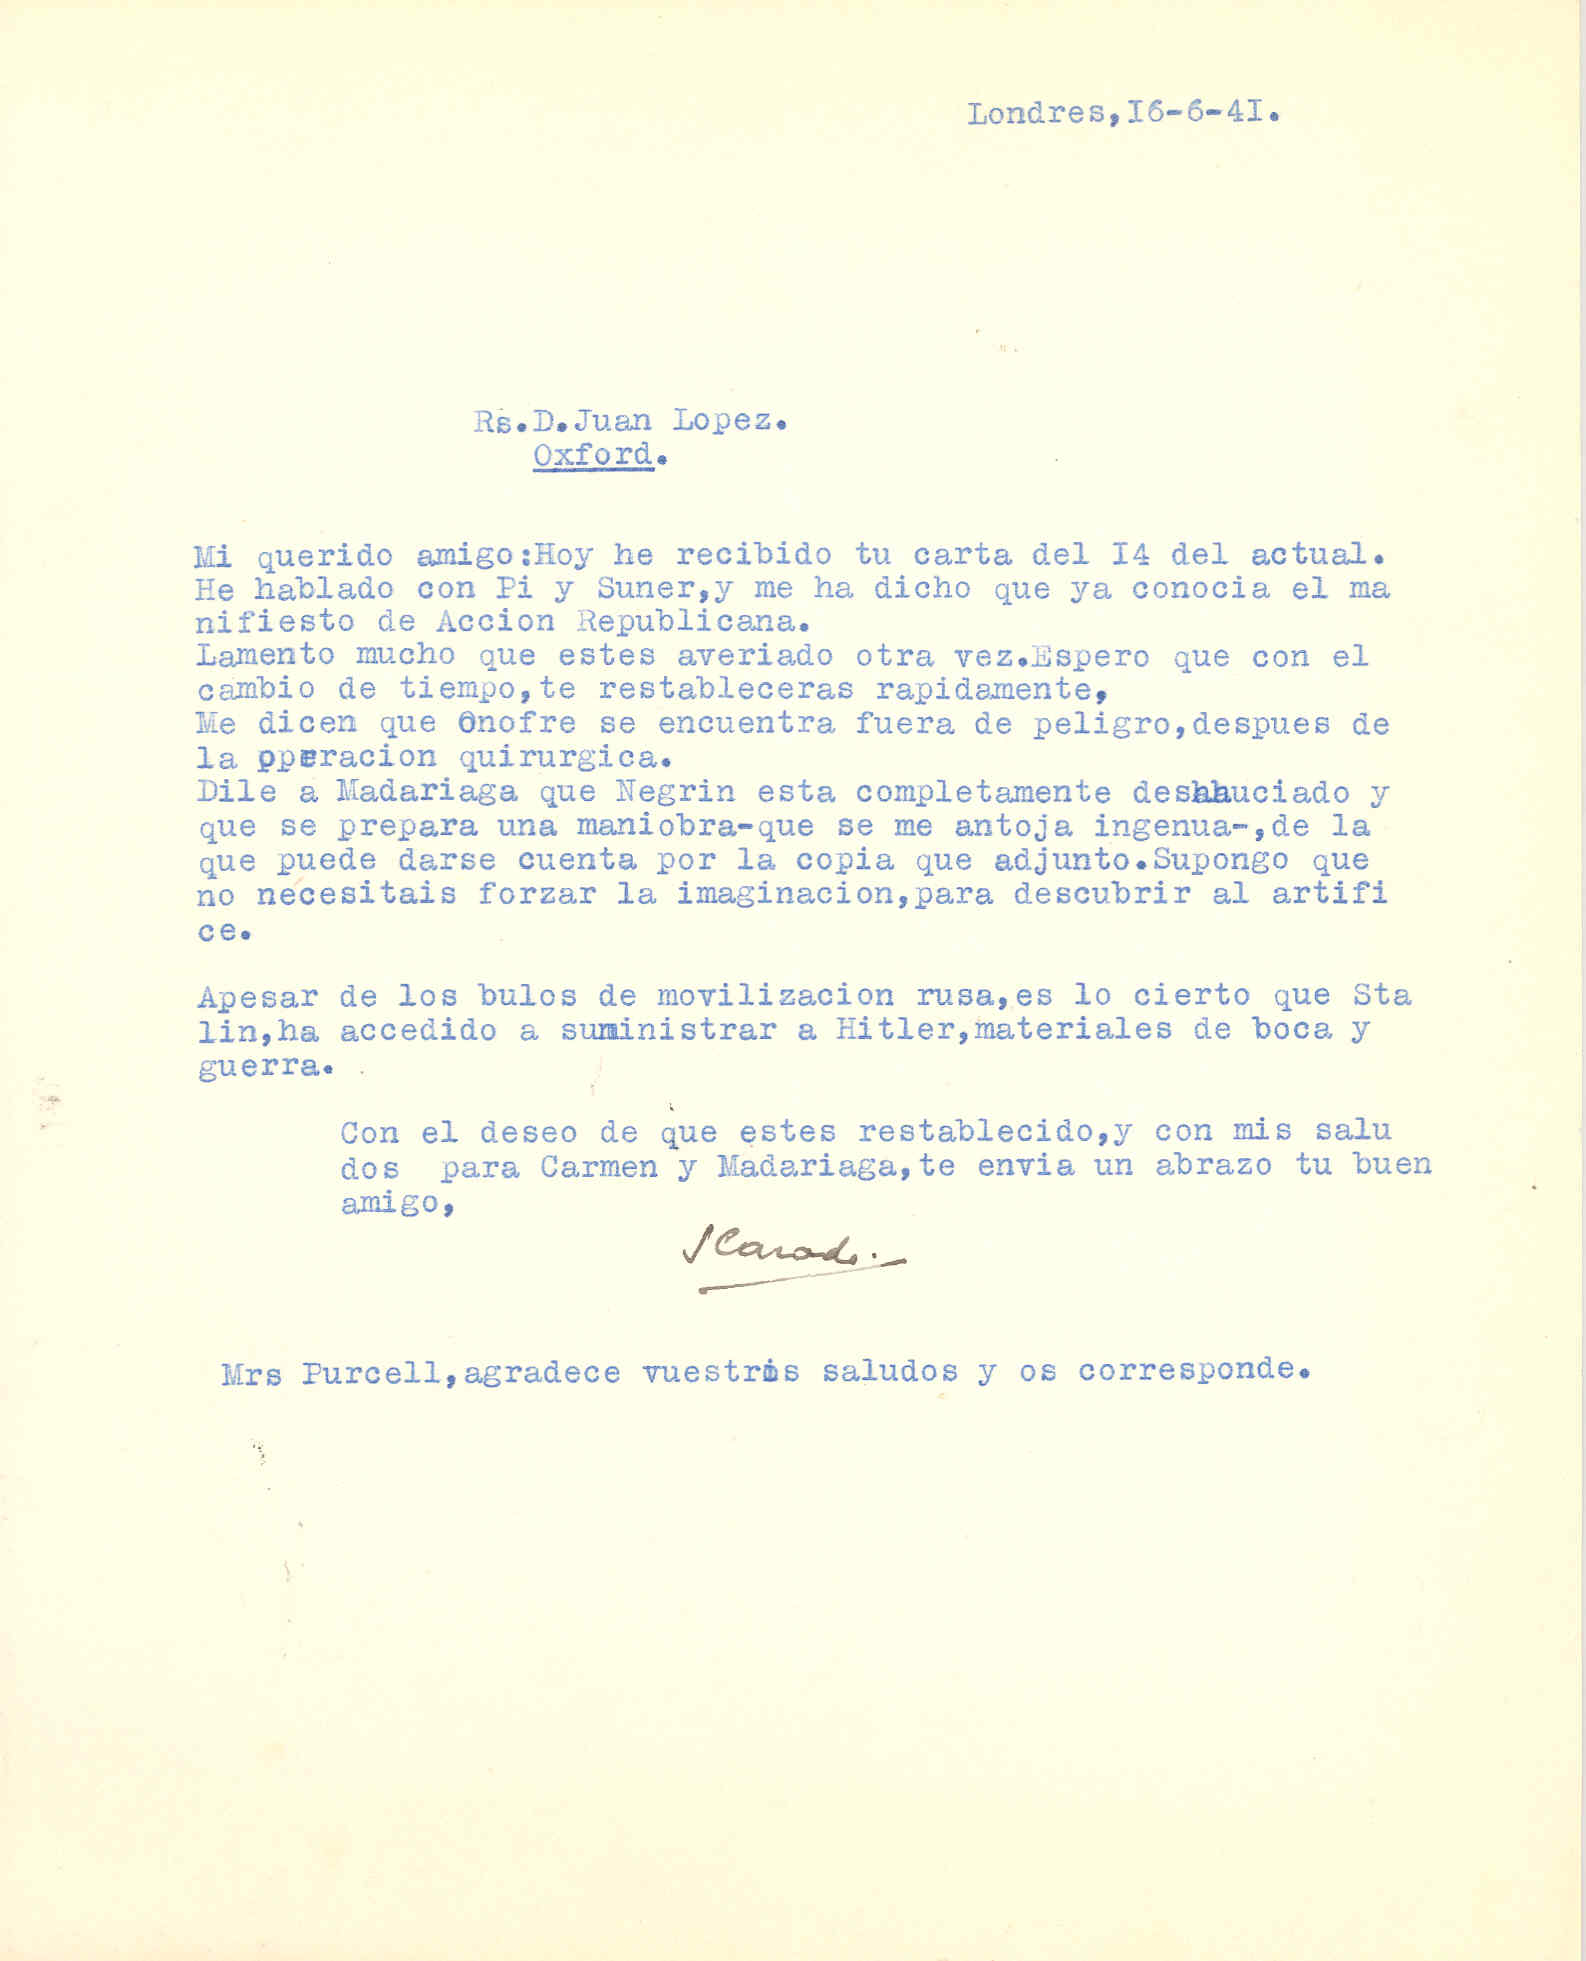 Carta de Segismundo Casado contando que Negrín prepara una maniobra y que Stalin ha accedido a suministrar a Hitler materiales de guerra.